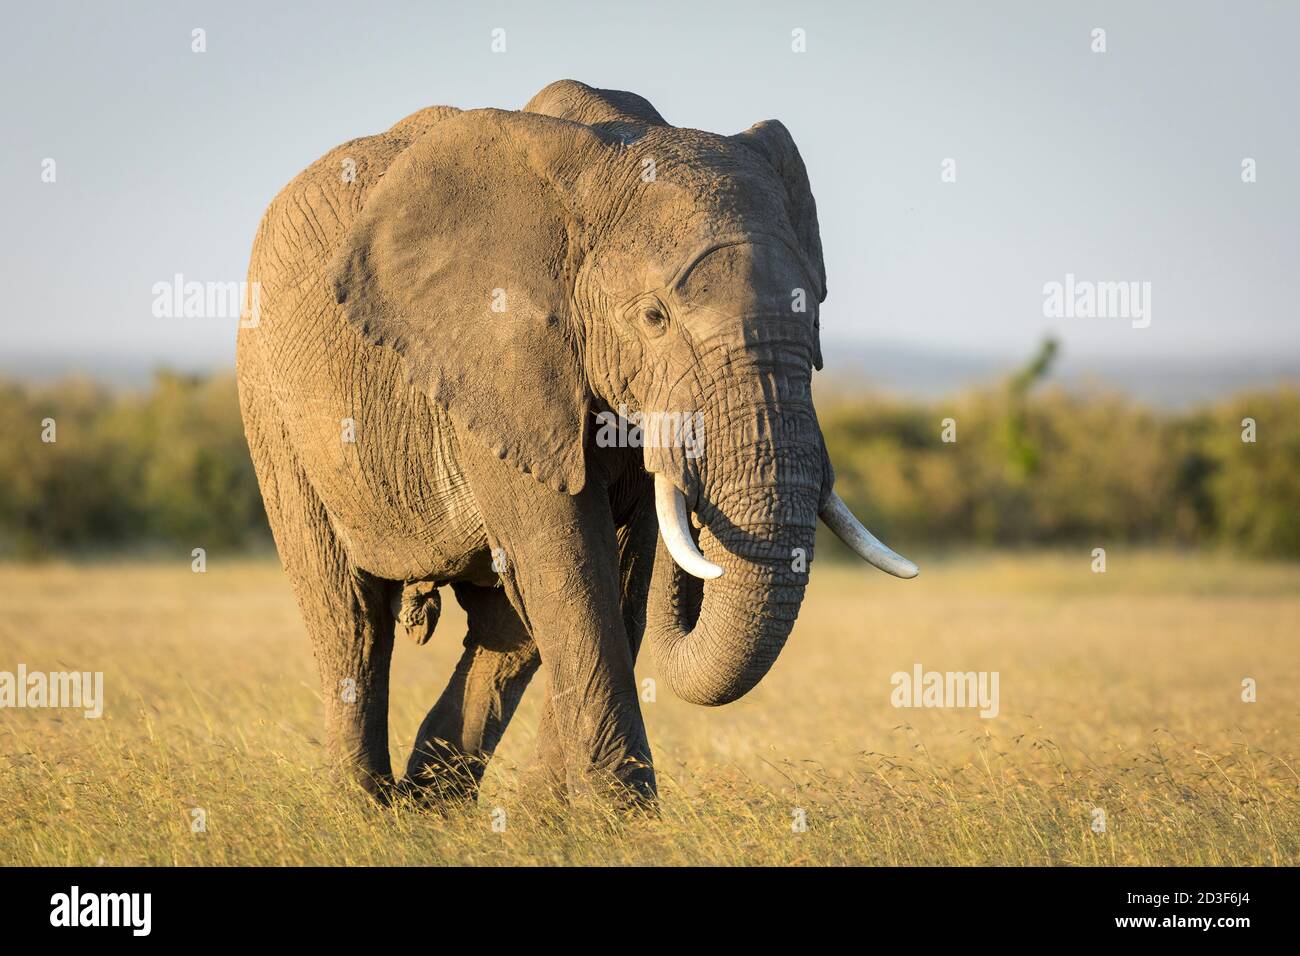 Large elephant walking through grass plains of Masai Mara in Kenya Stock Photo